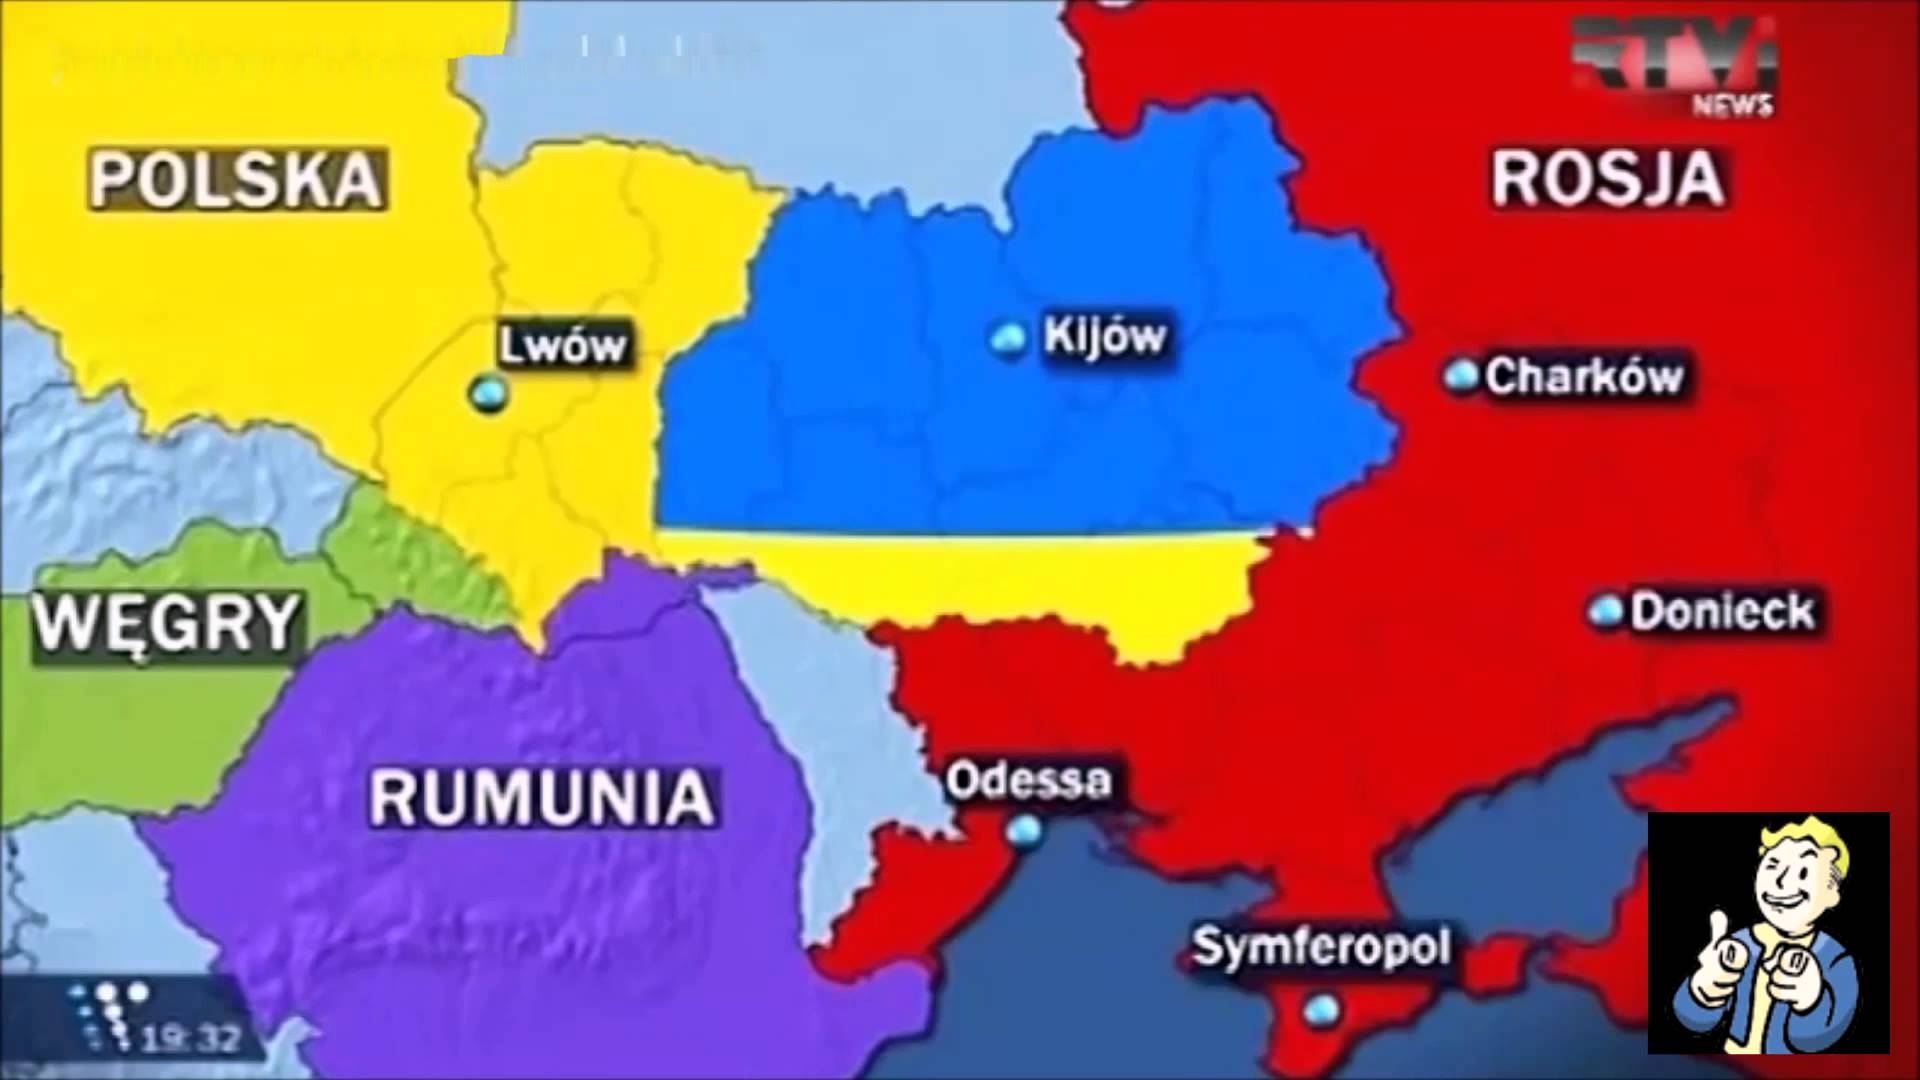 Ukrajina rozdělená mezi okolní státy, jedna z možných variant - ilustrační materiál